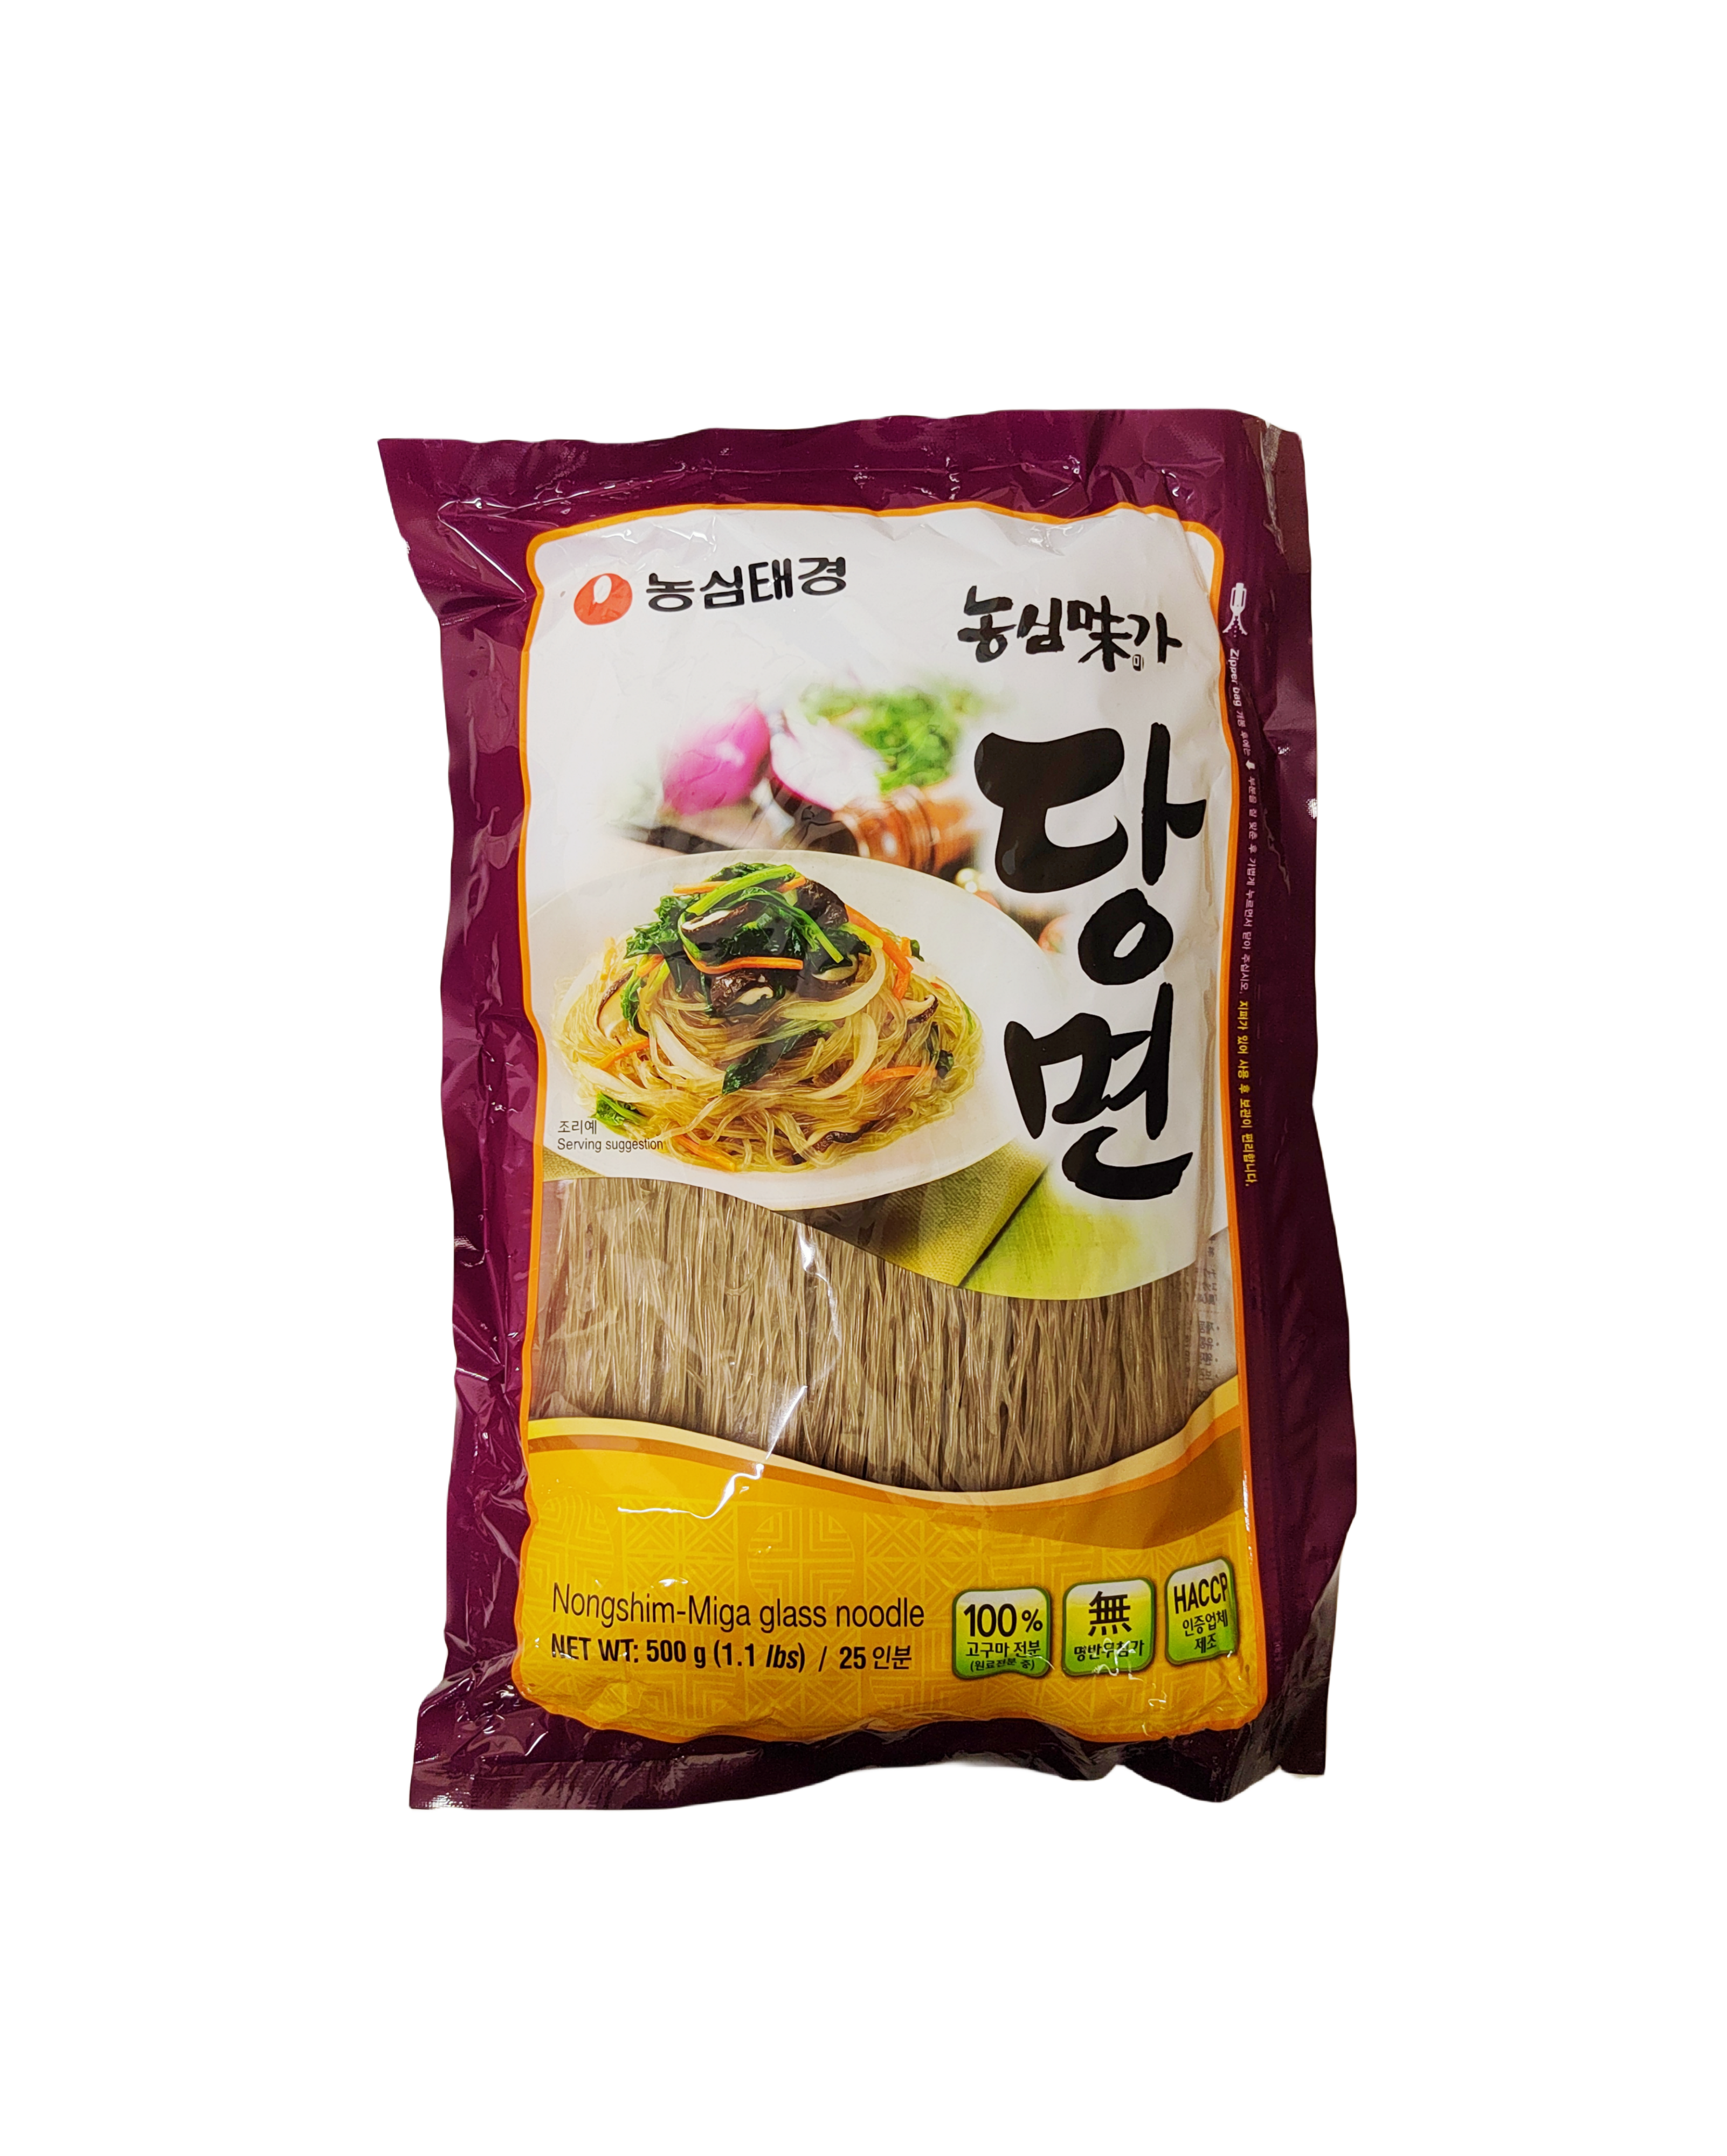 Sweet potato noodles 500g Nongshim Korea